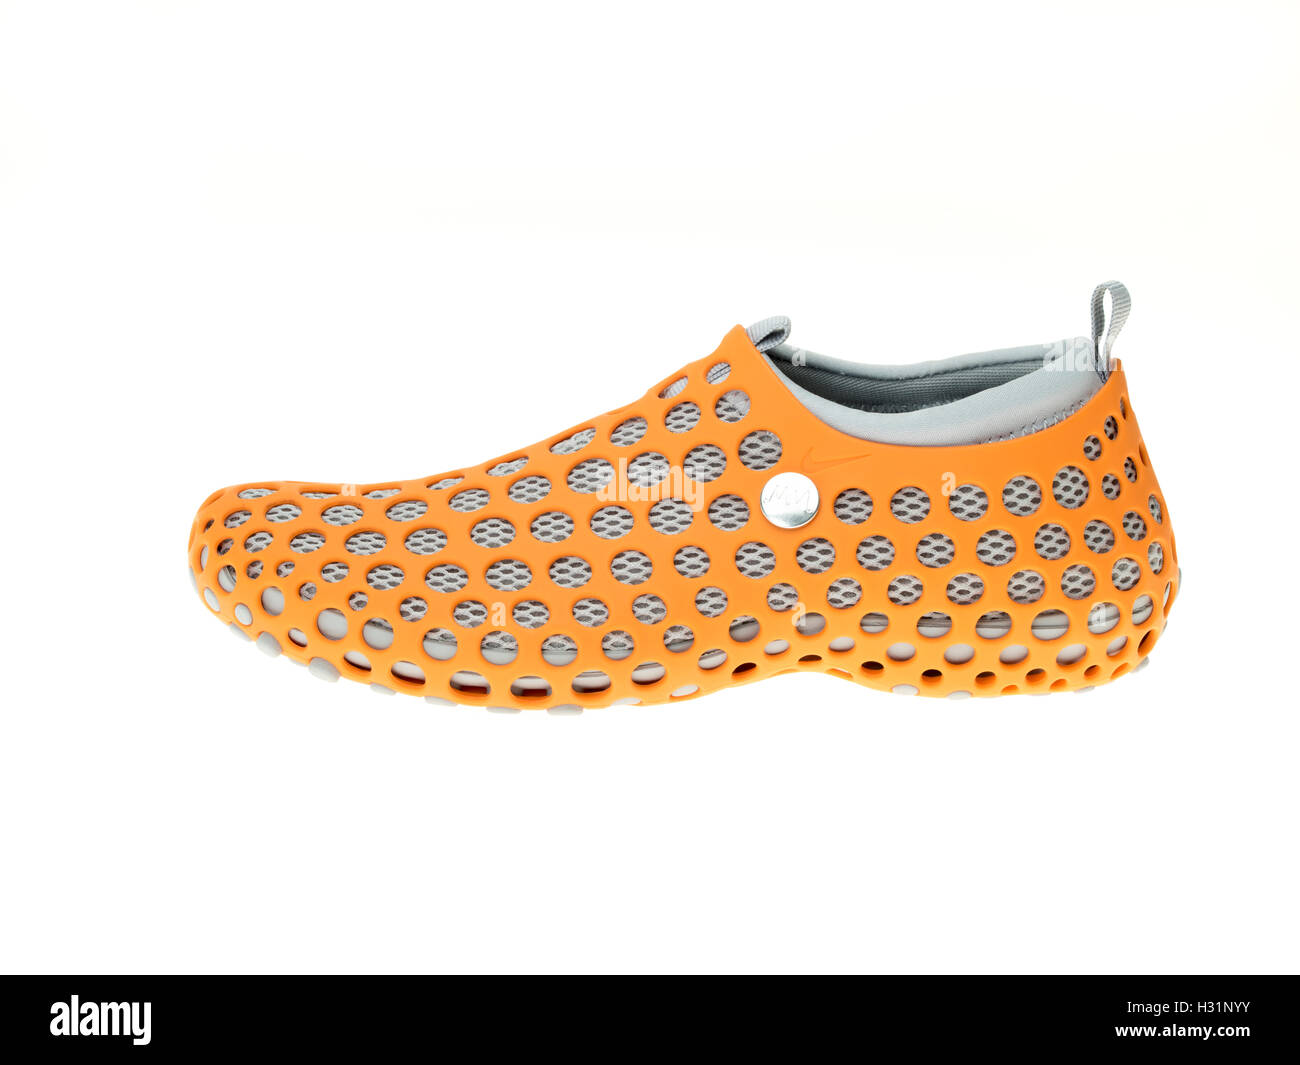 Chaussures de sport Nike ZVEZDOCHKA par le designer industriel Marc Newson Banque D'Images